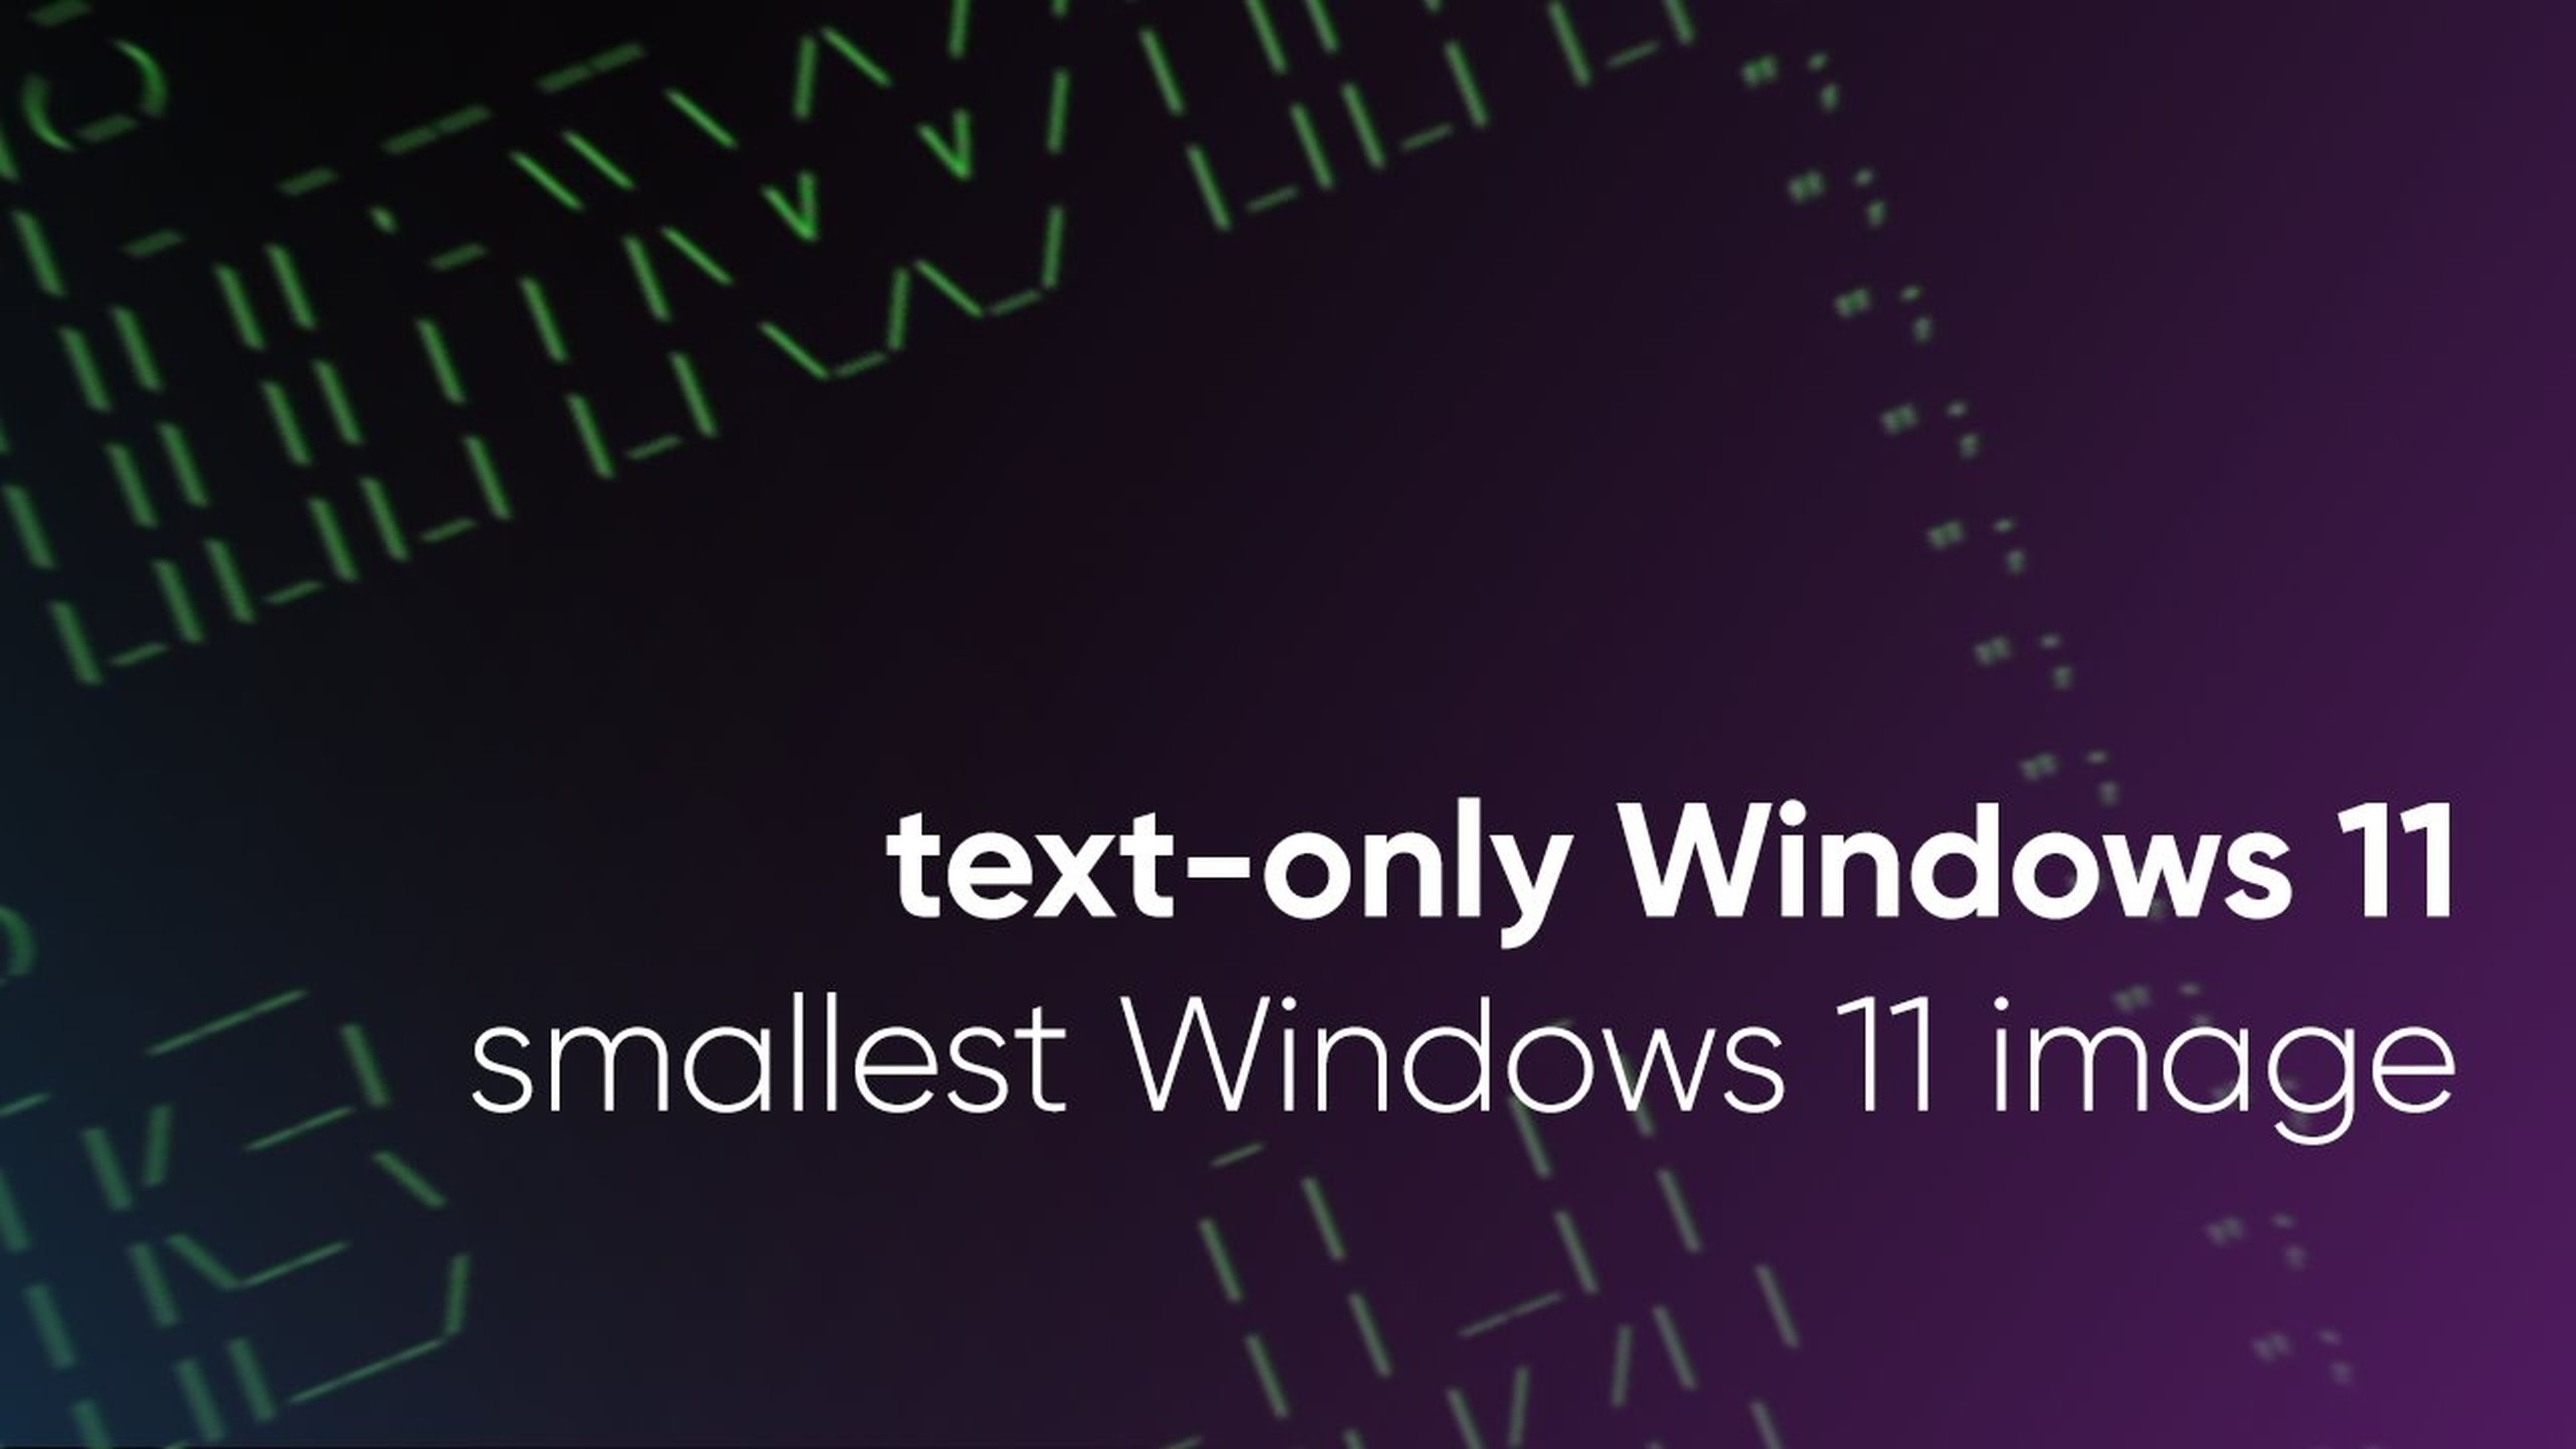 Tiny11 consigue que Windows 11 ocupe solo 100 MB, convirtiéndolo en MS-DOS 11